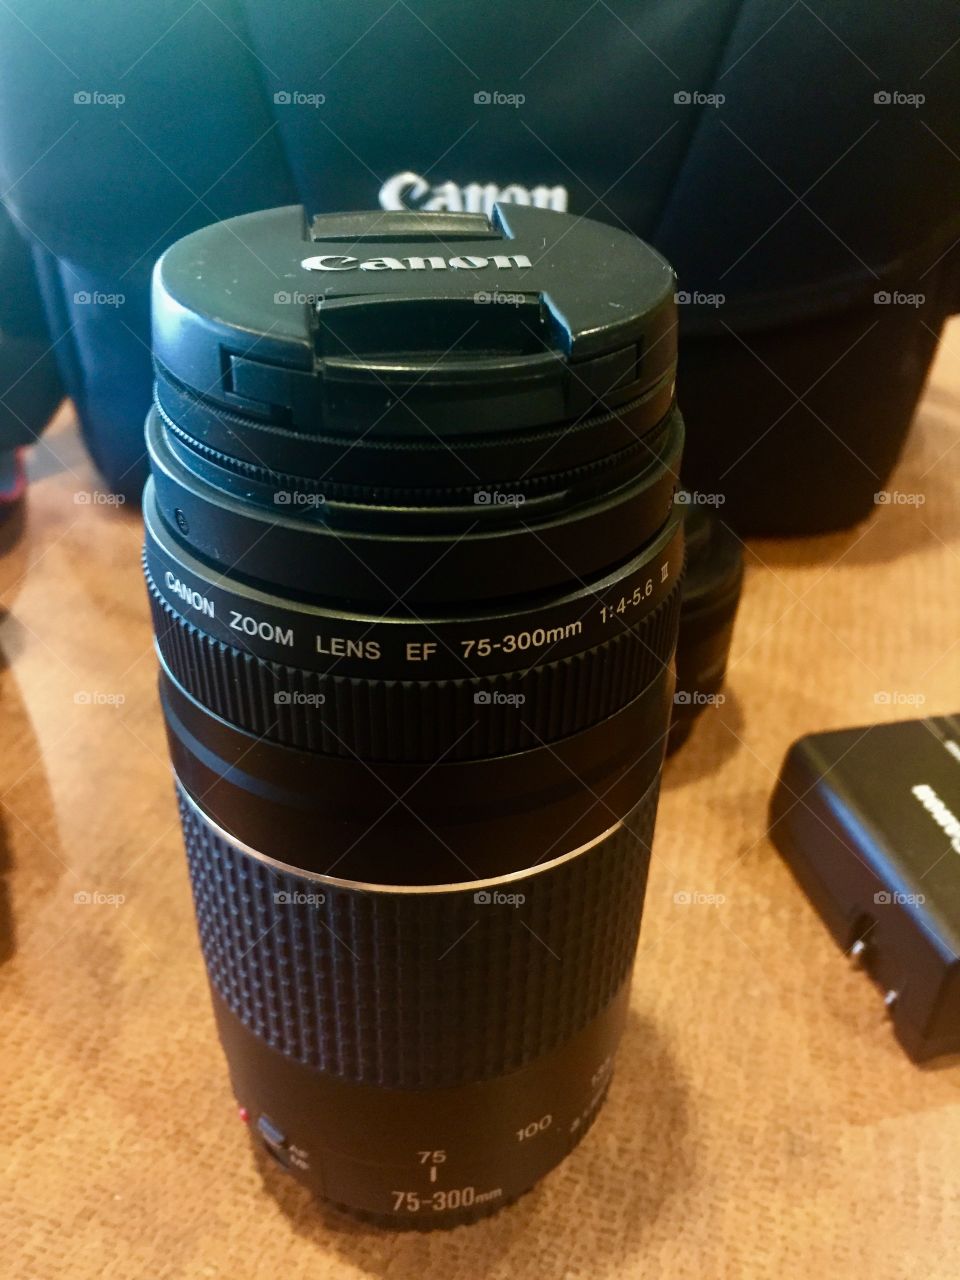 Lens
